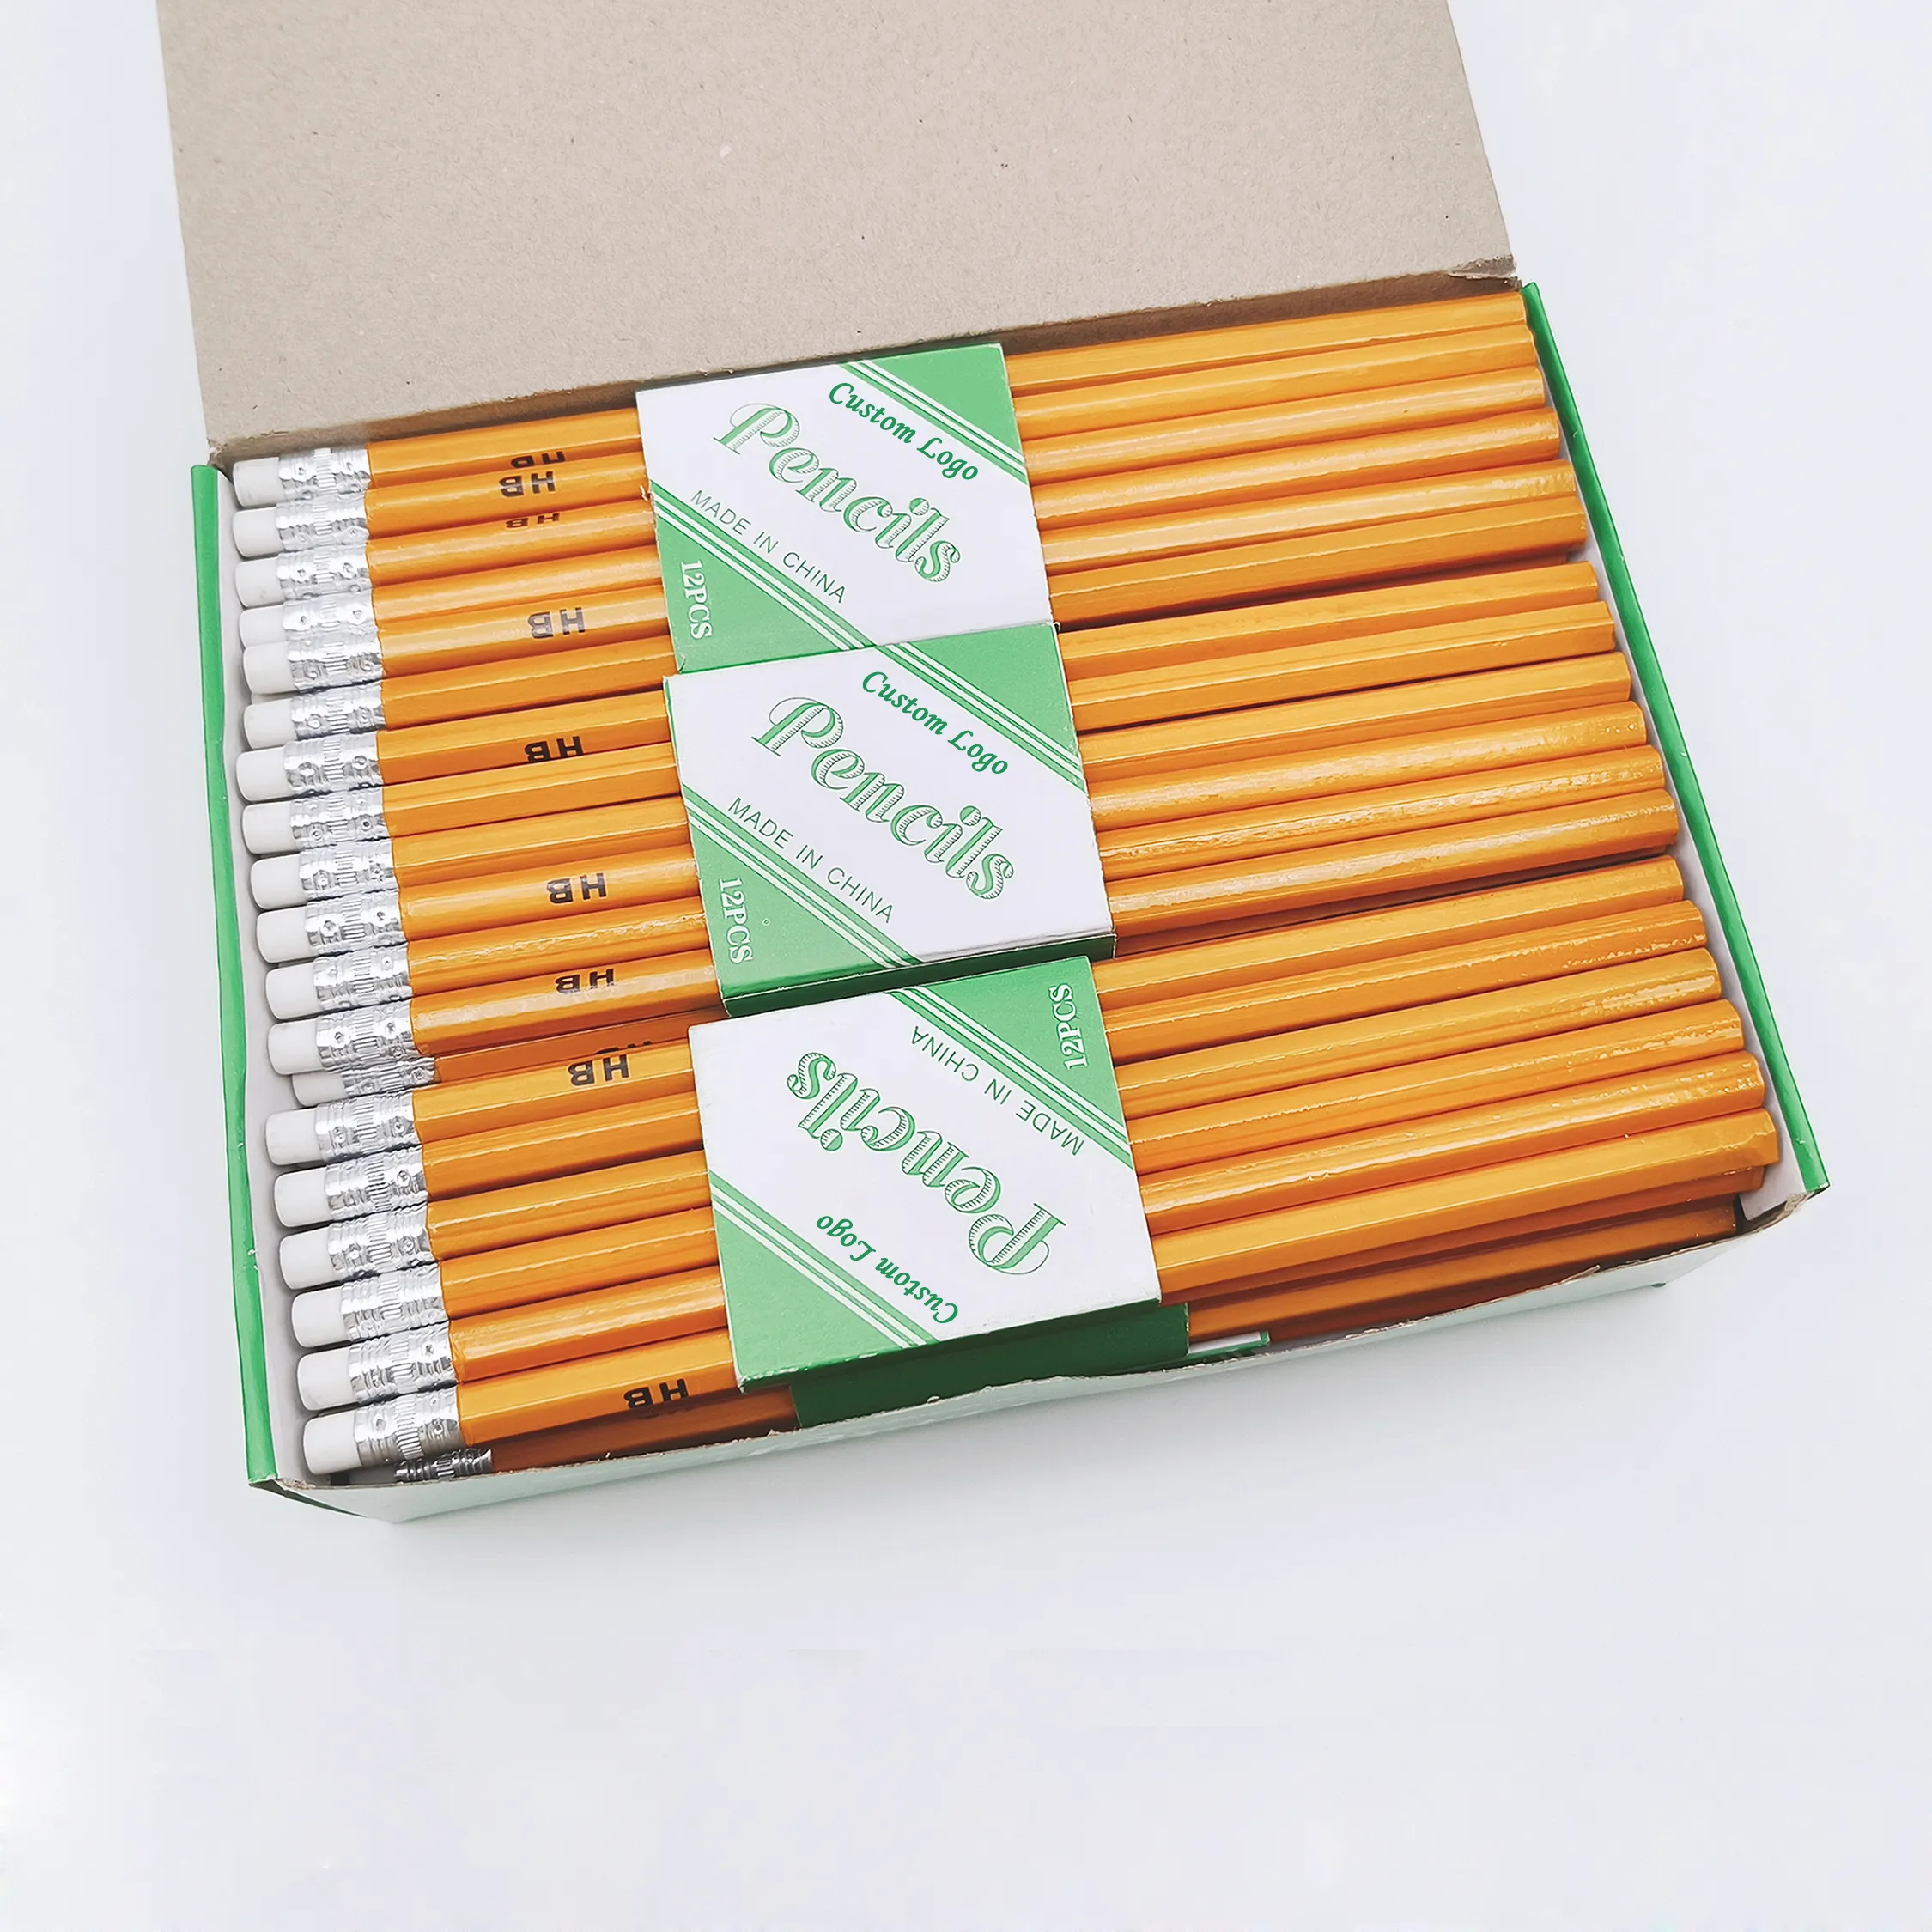 أقلام رصاص خشبية محكمة بقياس 7 بوصات باللون الأصفر ومصنوعة من مواد مدرسية قياسية ومخصصة ترويجية مزودة بممحاة